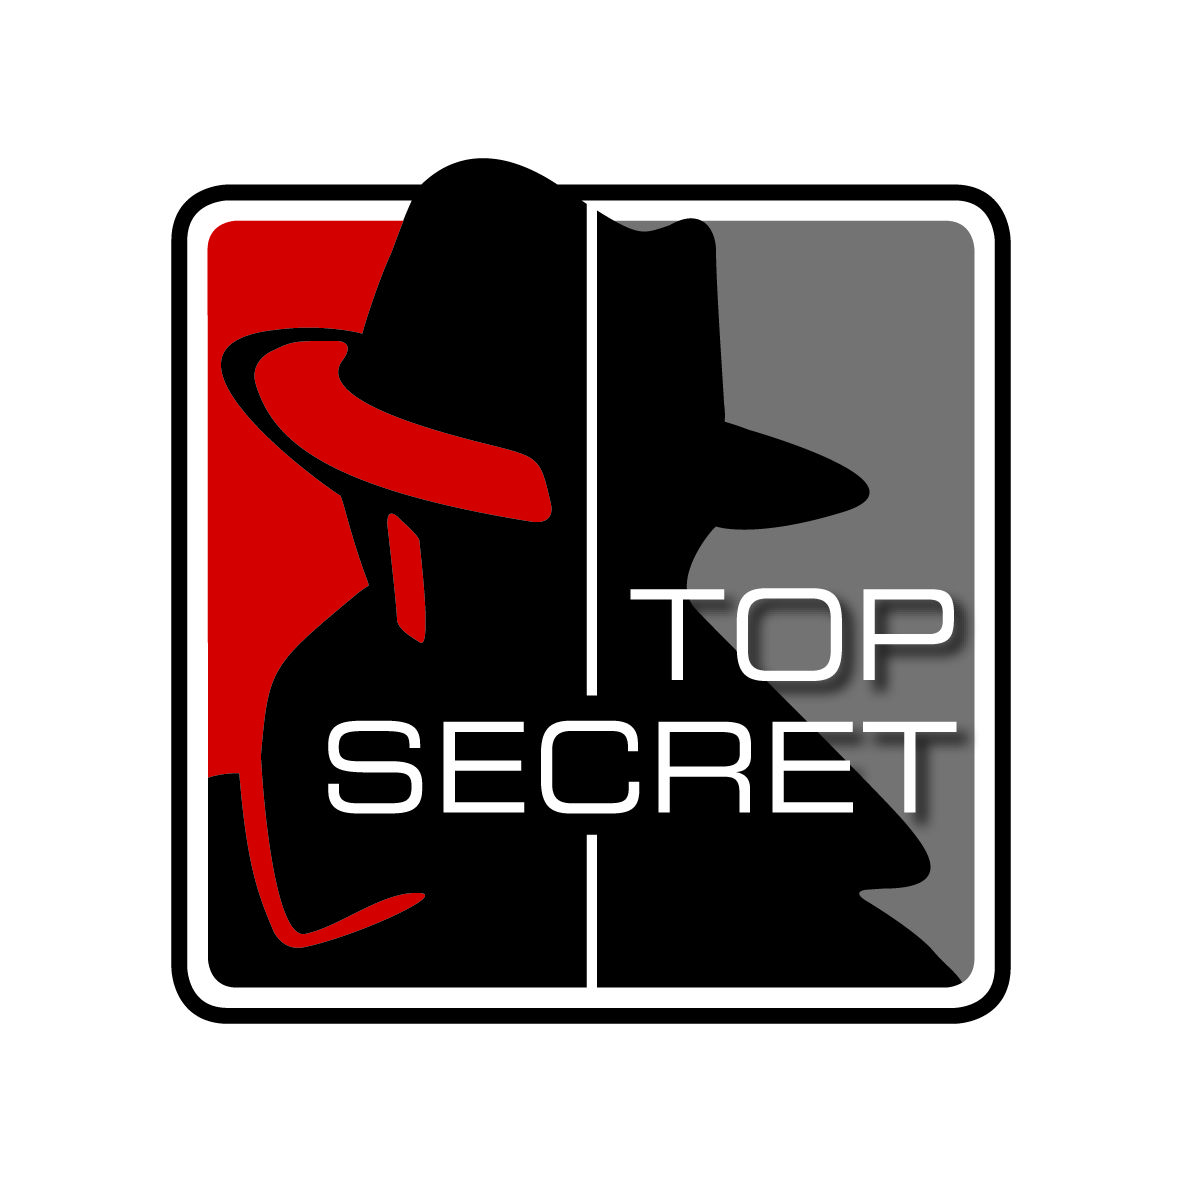 Top secret Logos.